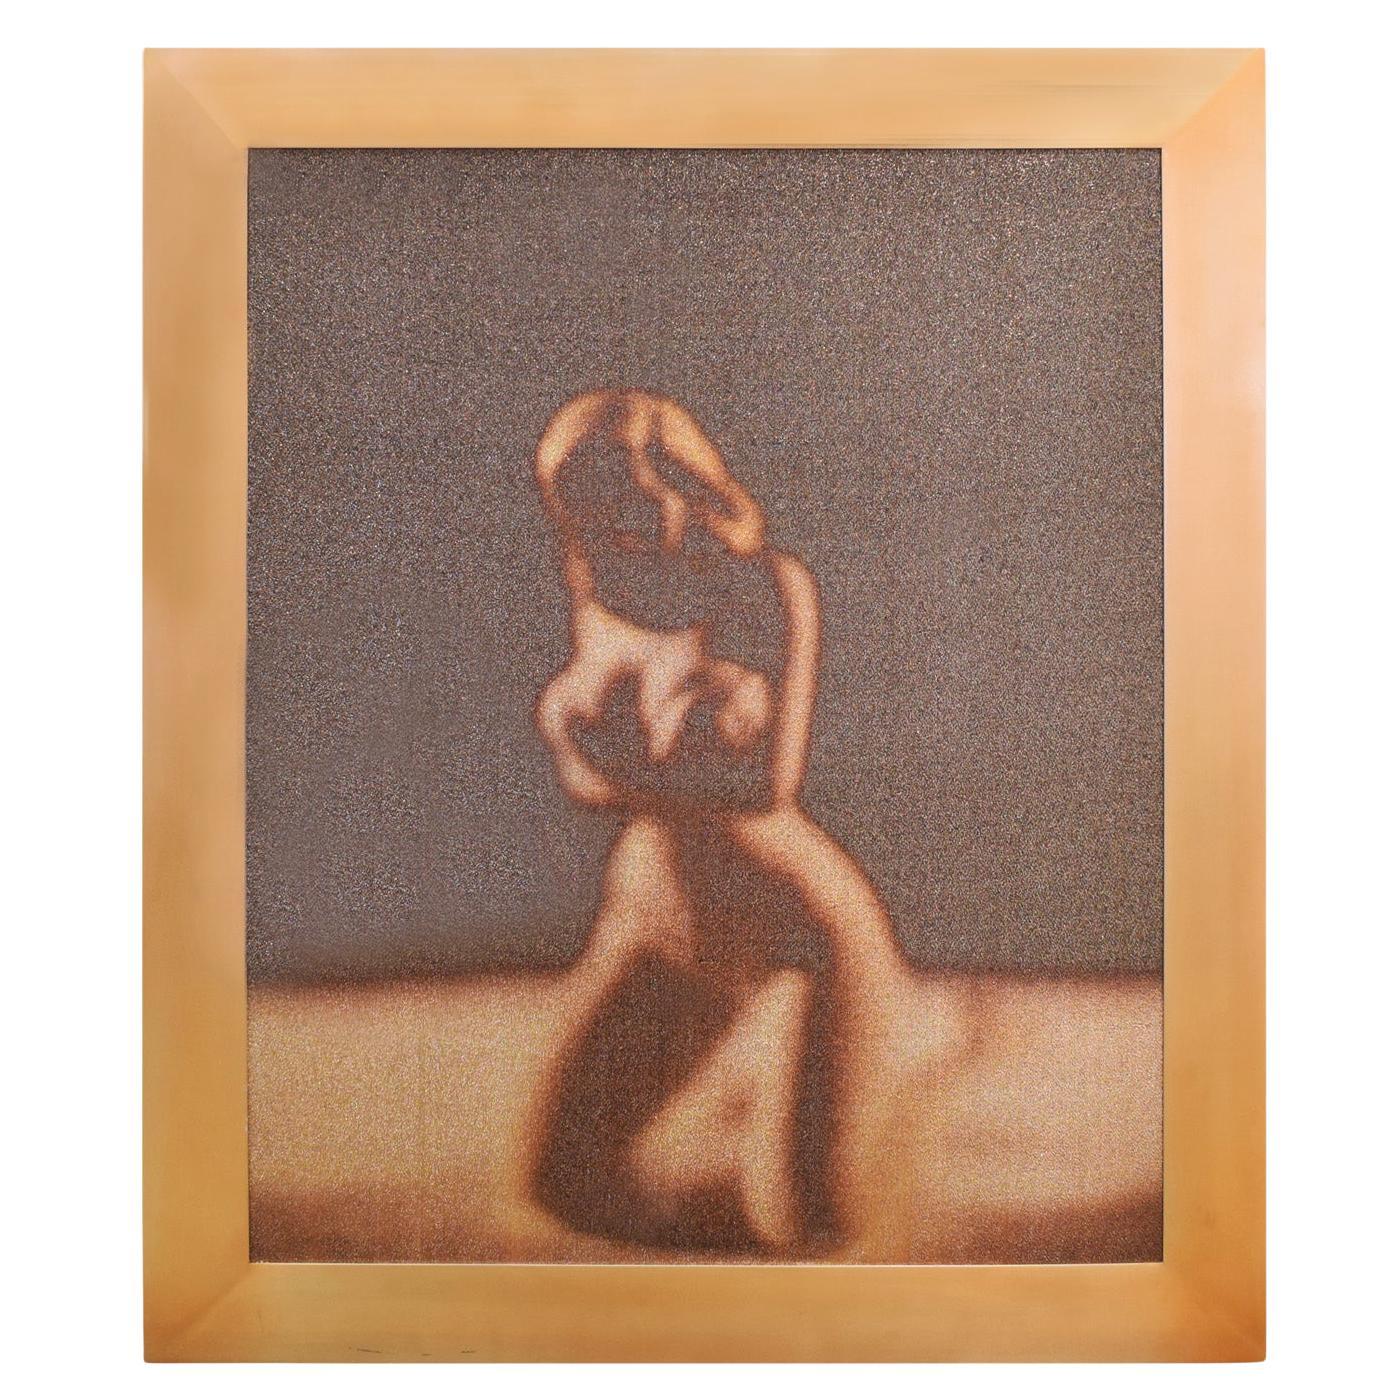 Grande photographie unique « Desire » de David Levinthal, 1991